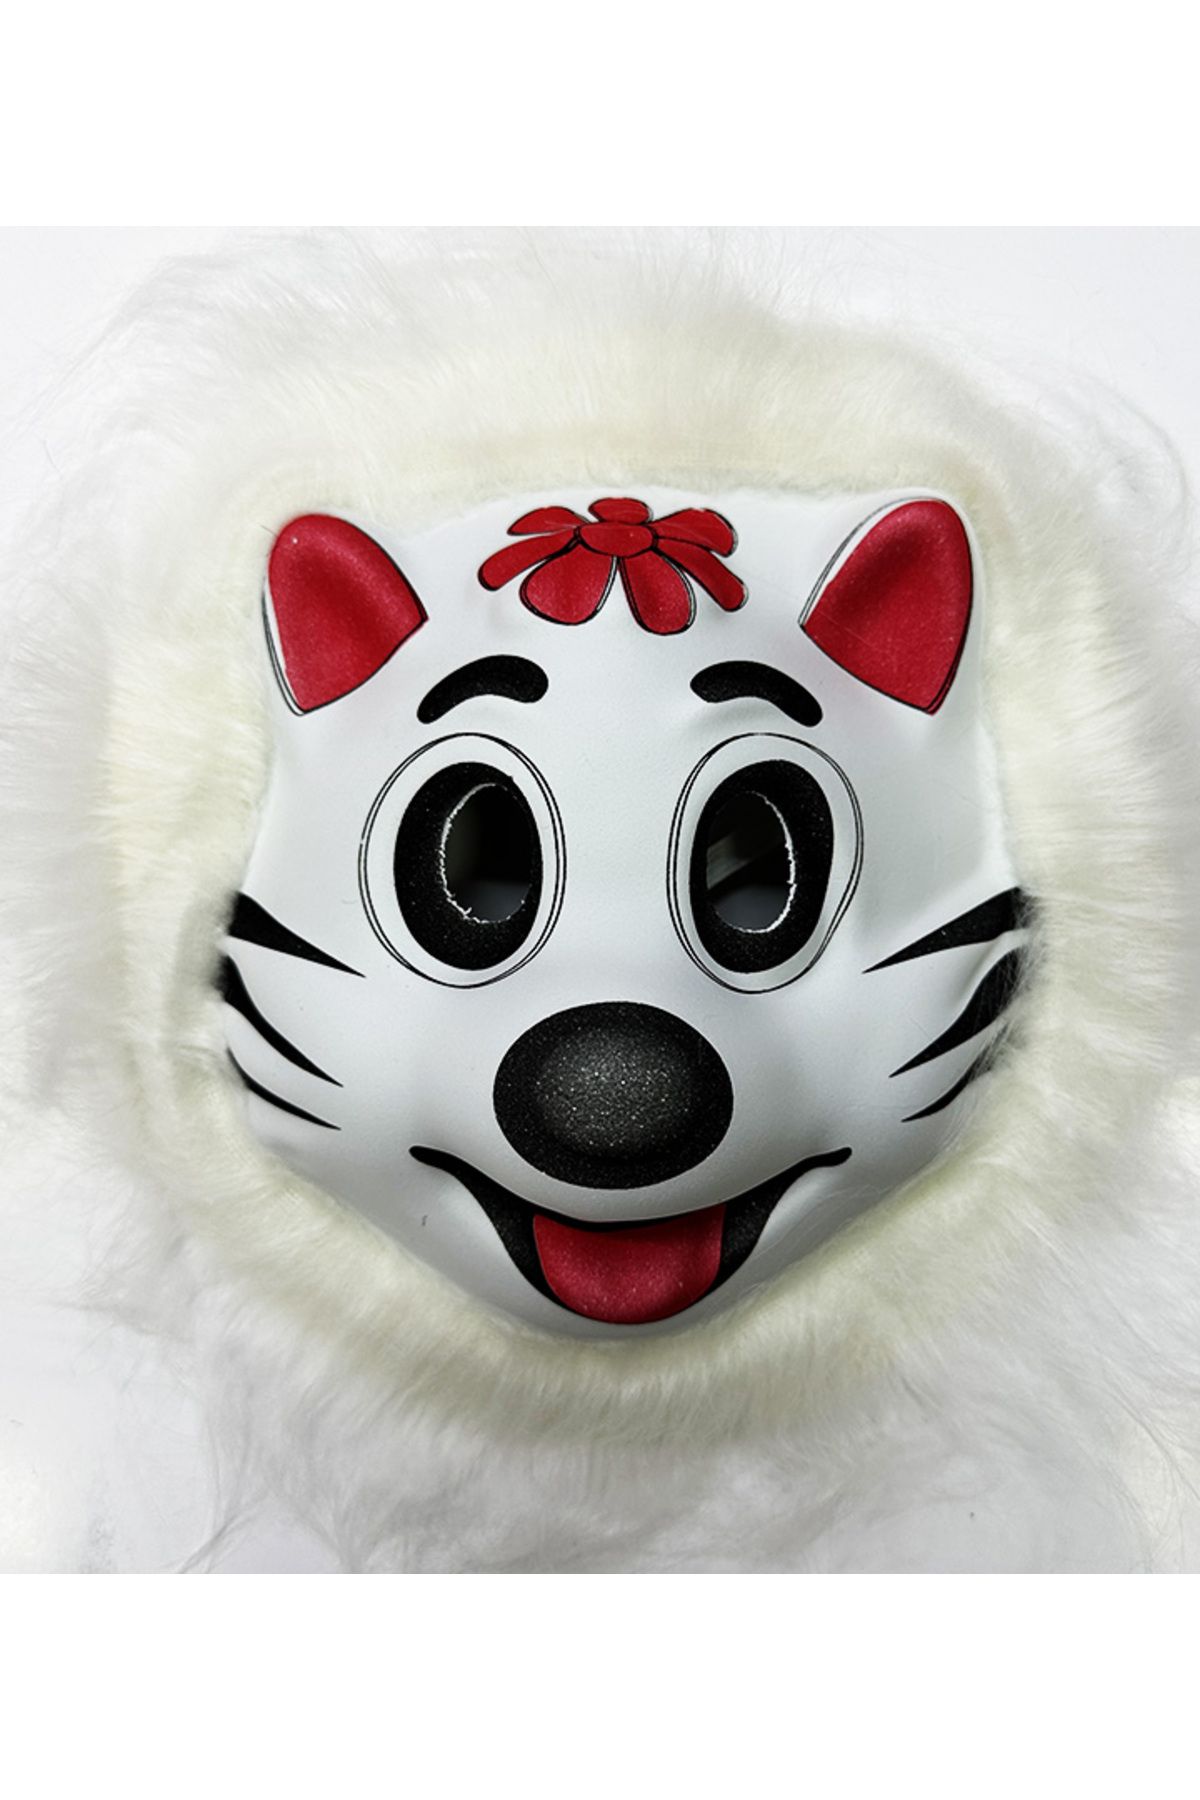 Go İthalat Kedi Maskesi - Sevimli Kedi Maskesi Pembe Kulaklı Yetişkin Çocuk Uyumlu Model 10